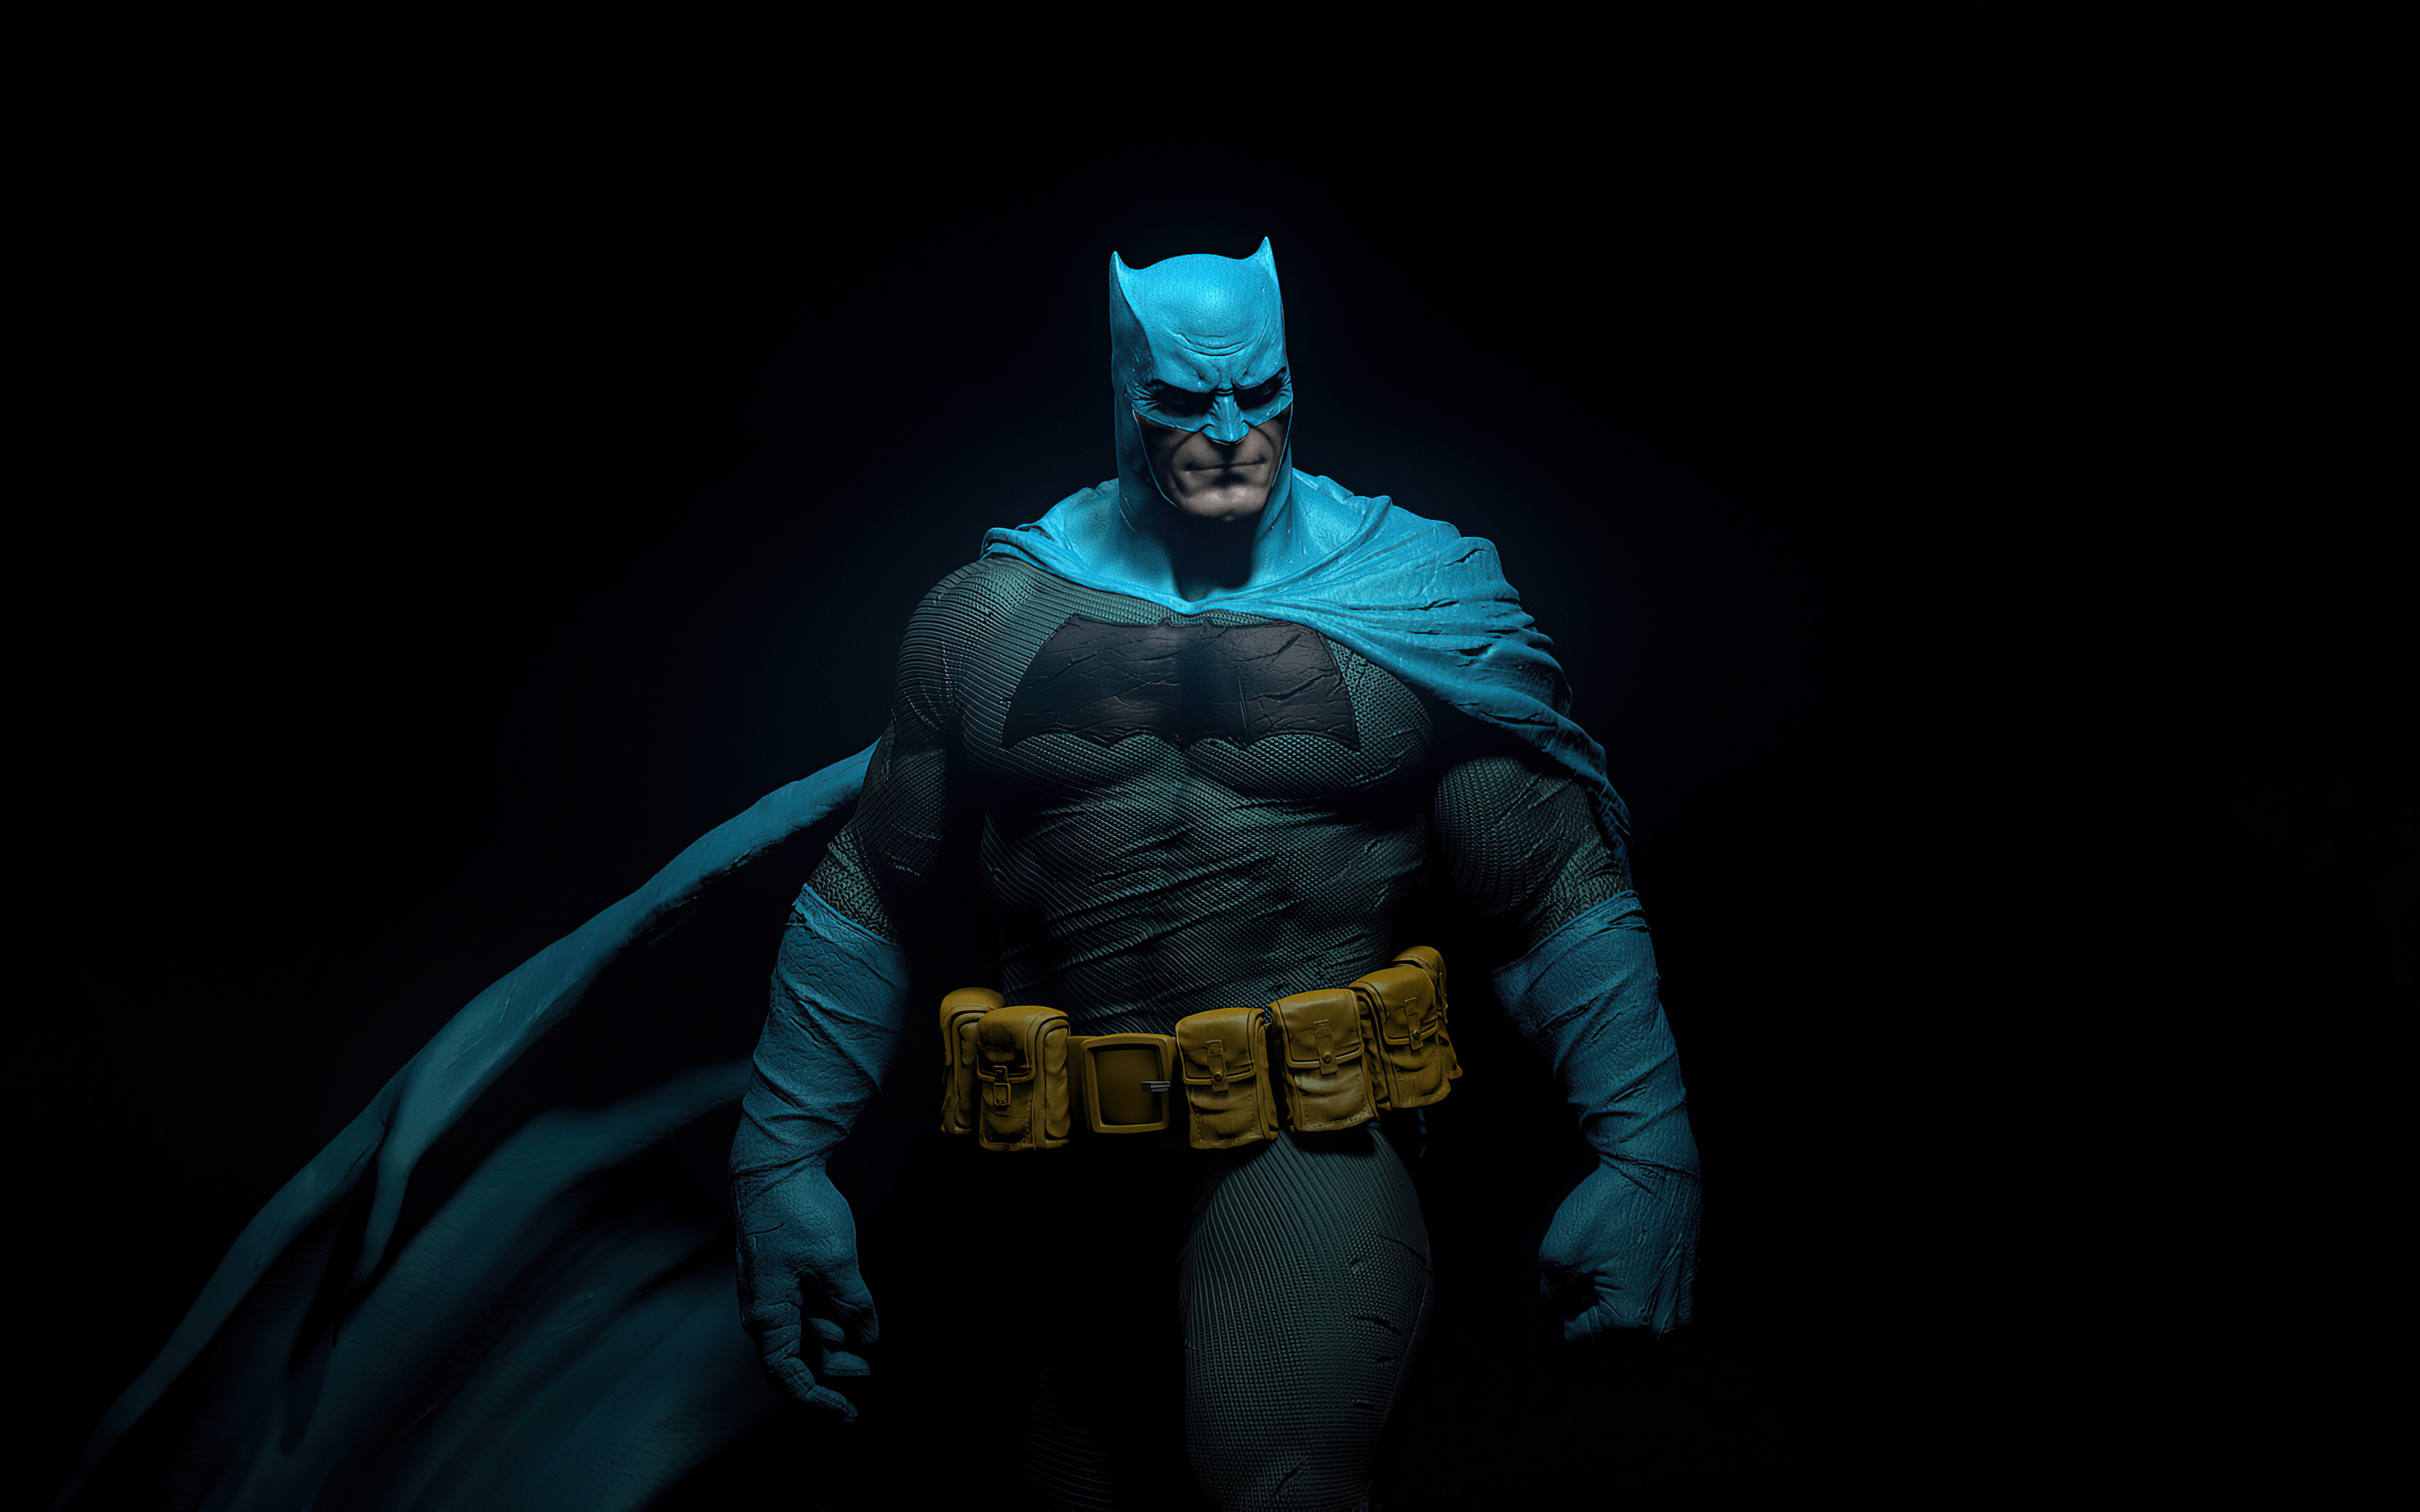 The Batman, fan art, 2020, 2880x1800 wallpaper